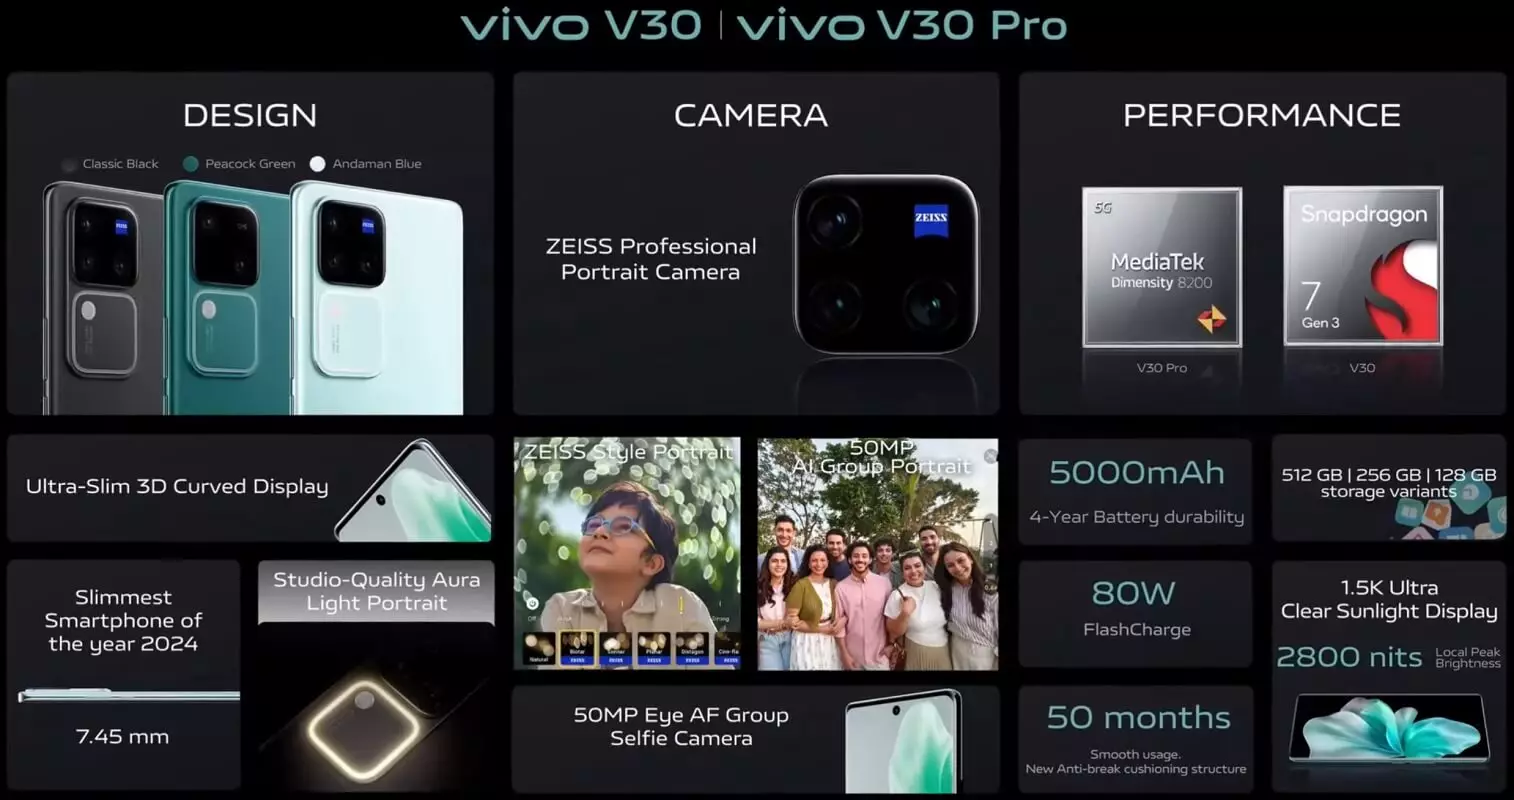 Vivo V30 and Vivo V30 Pro features India.